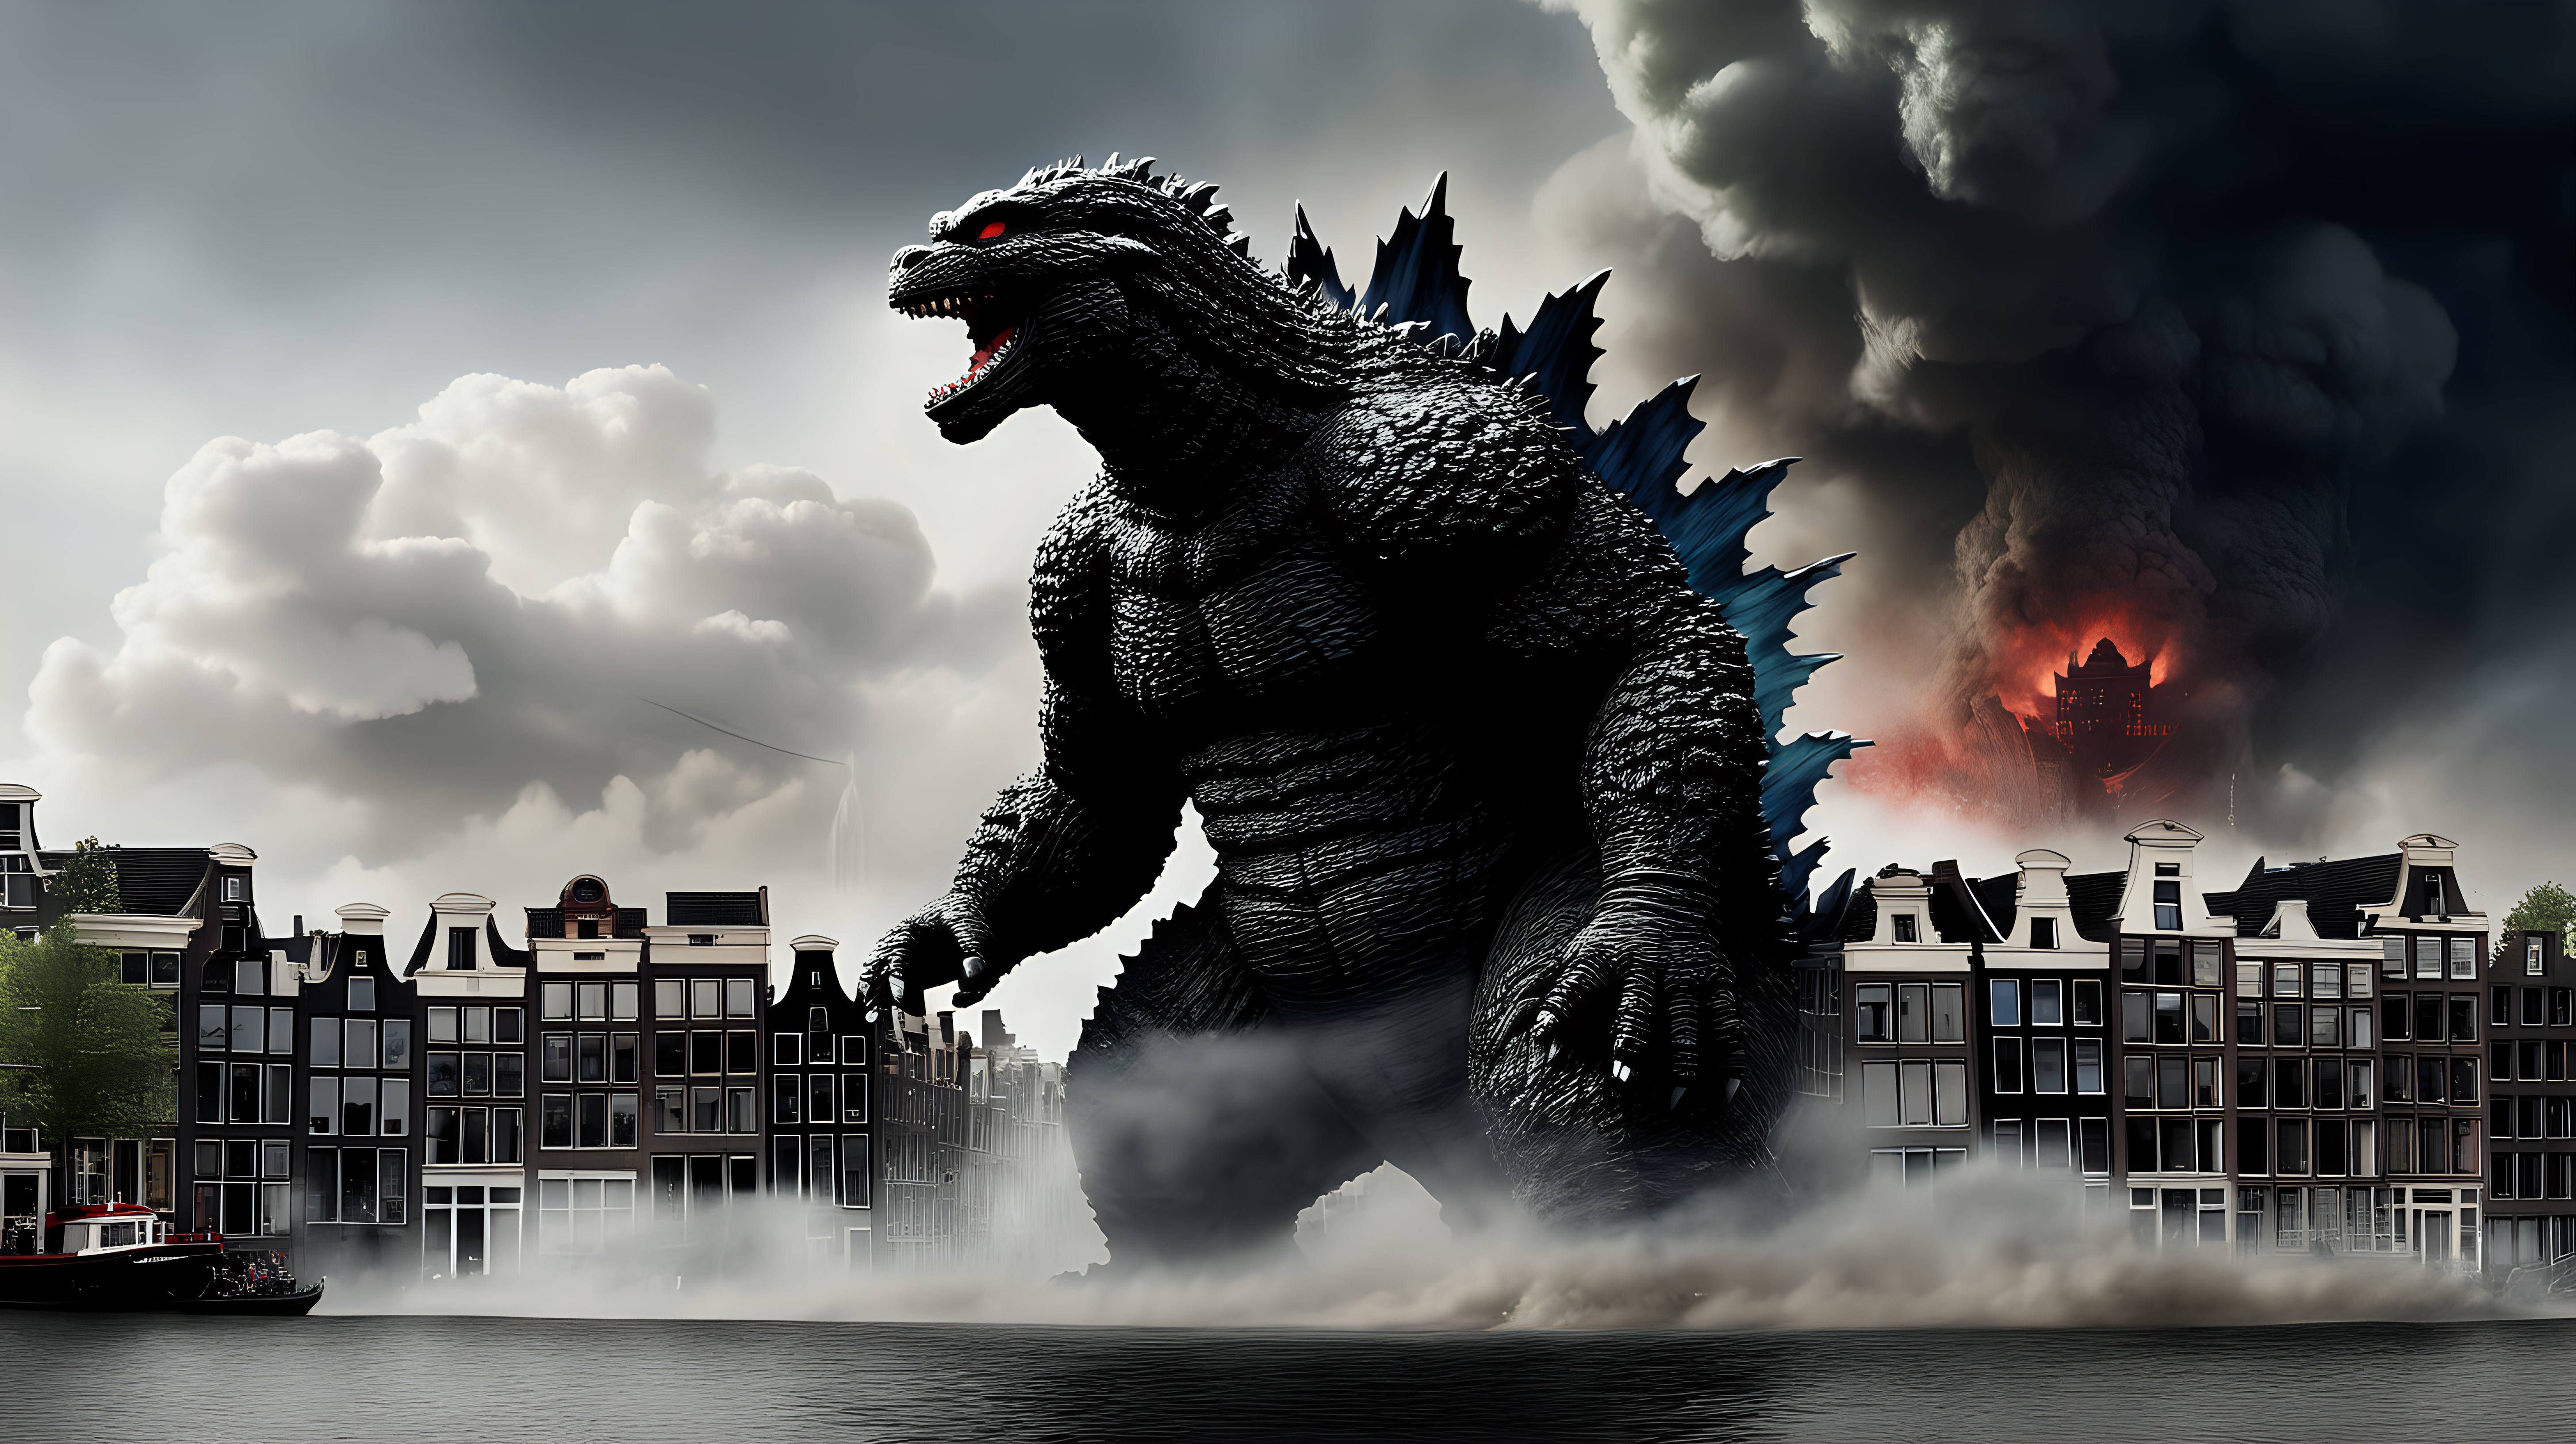 Godzilla destroying Amsterdam